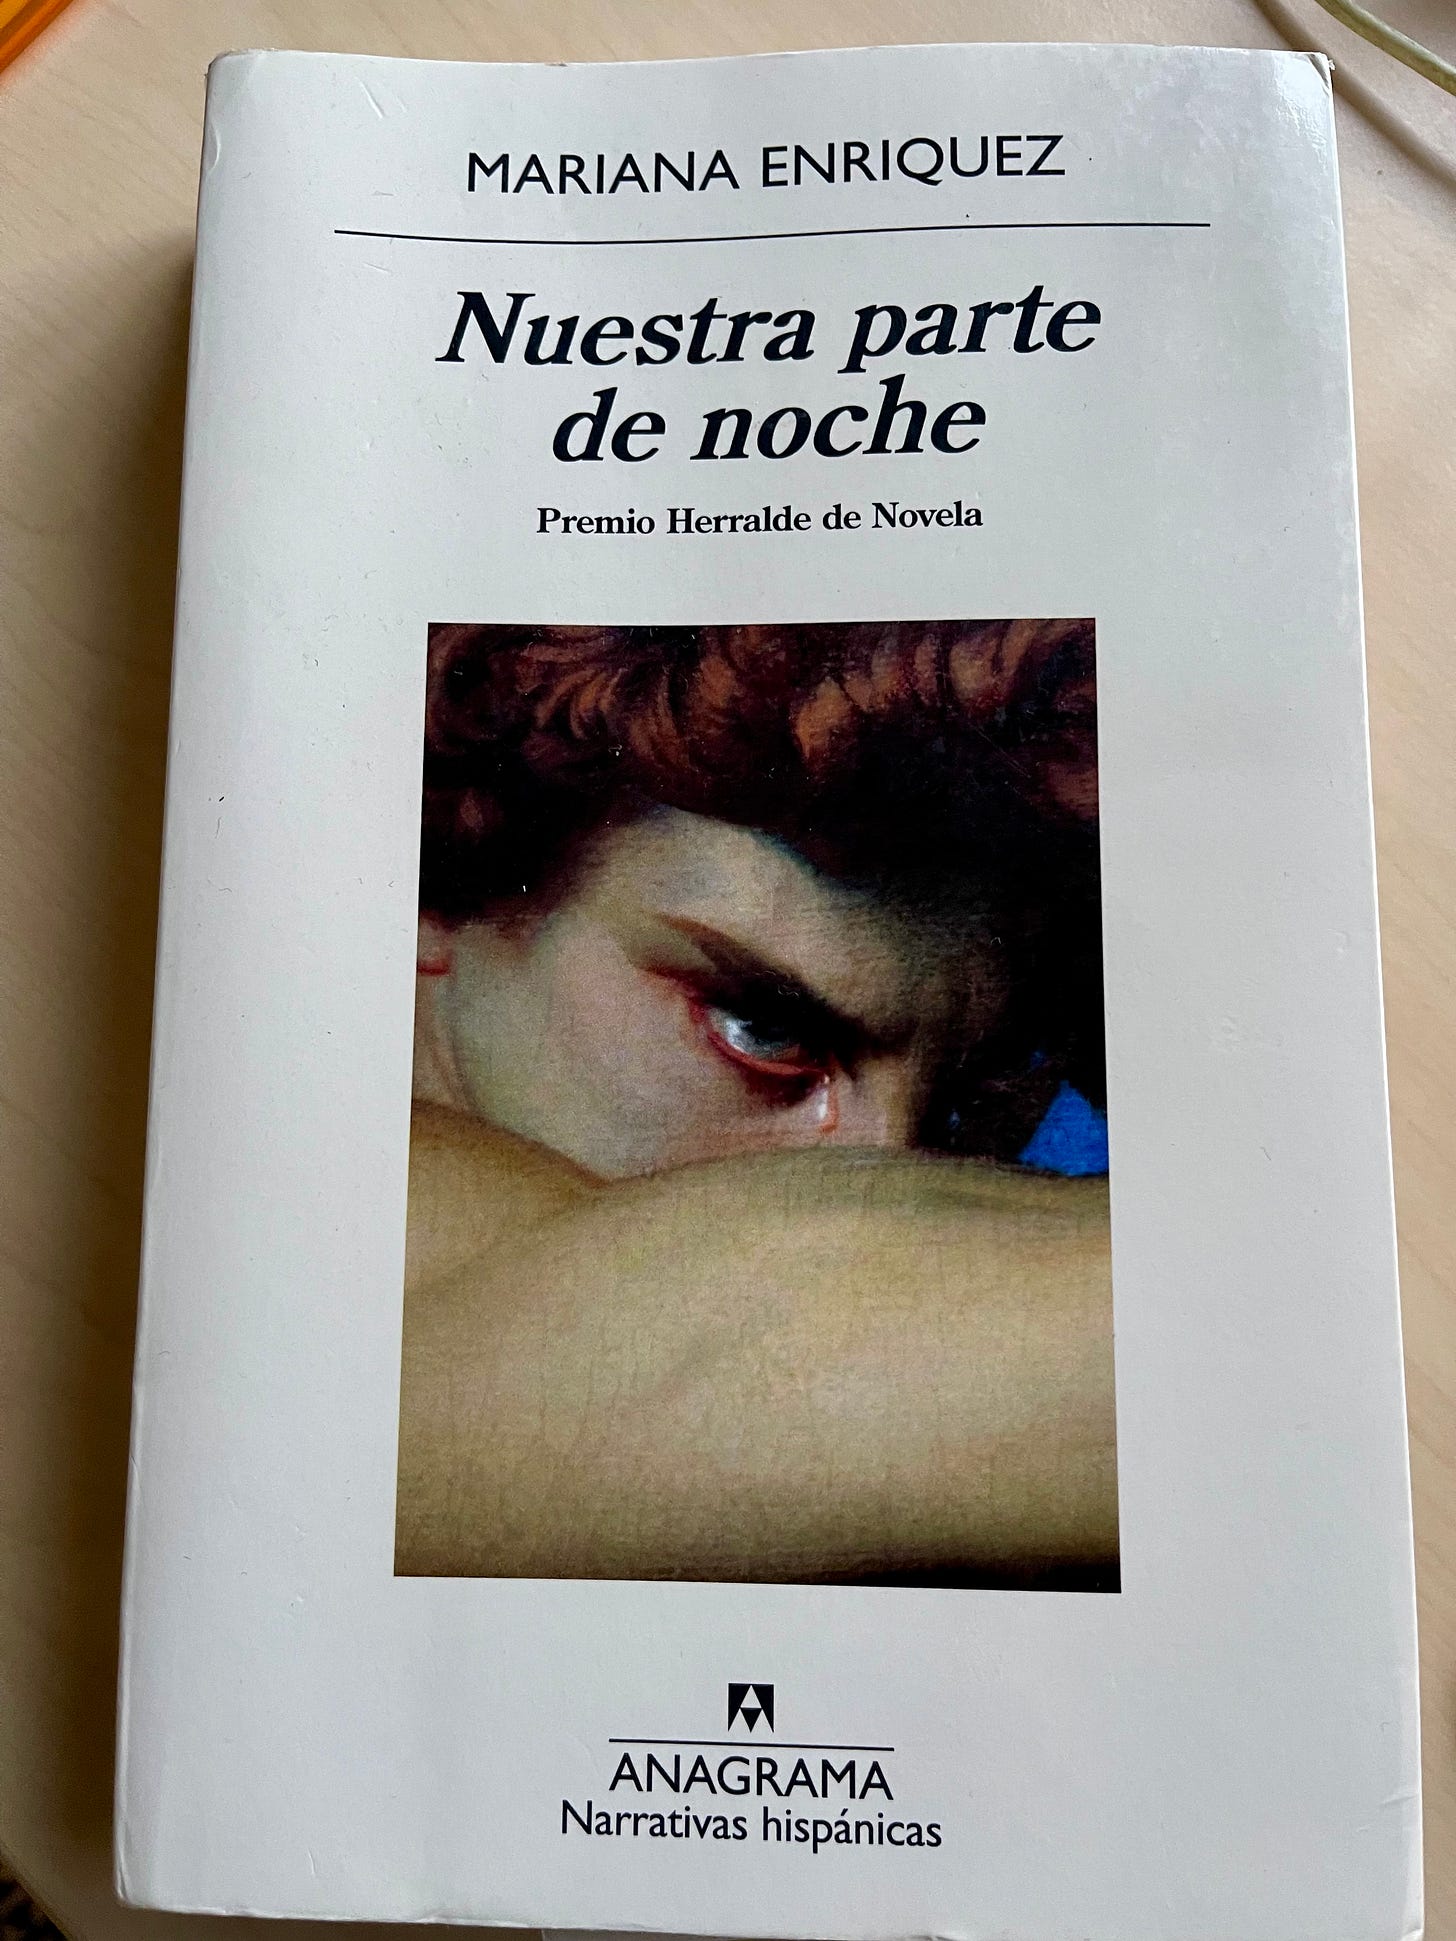 Bookcover, Spanish edition of Mariana Enríquez, Nuestra parte de noche